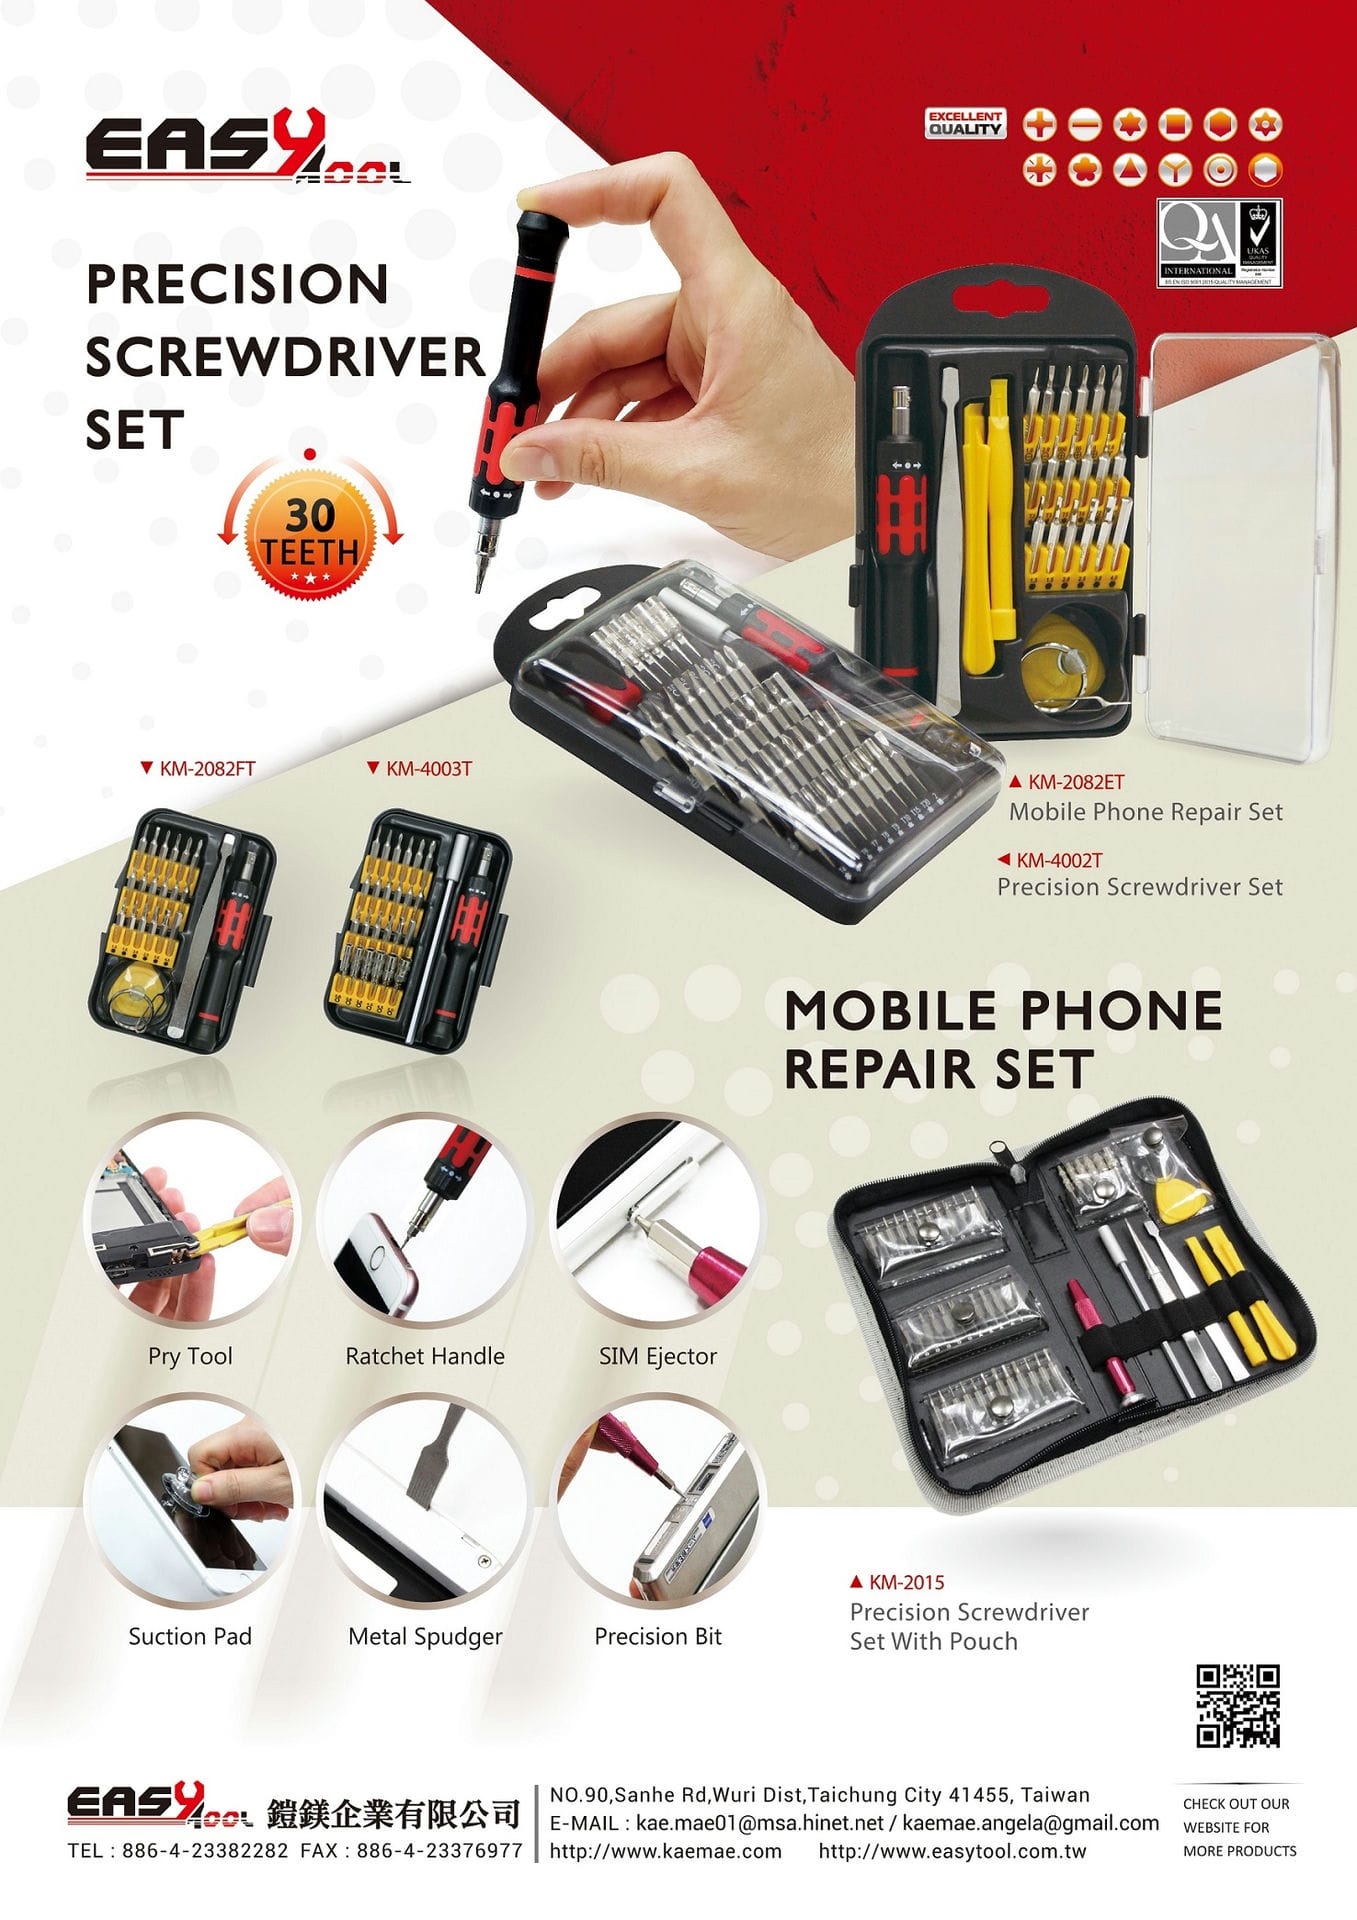 Precision Screwdriver Set / Mobile Phone Repair Set